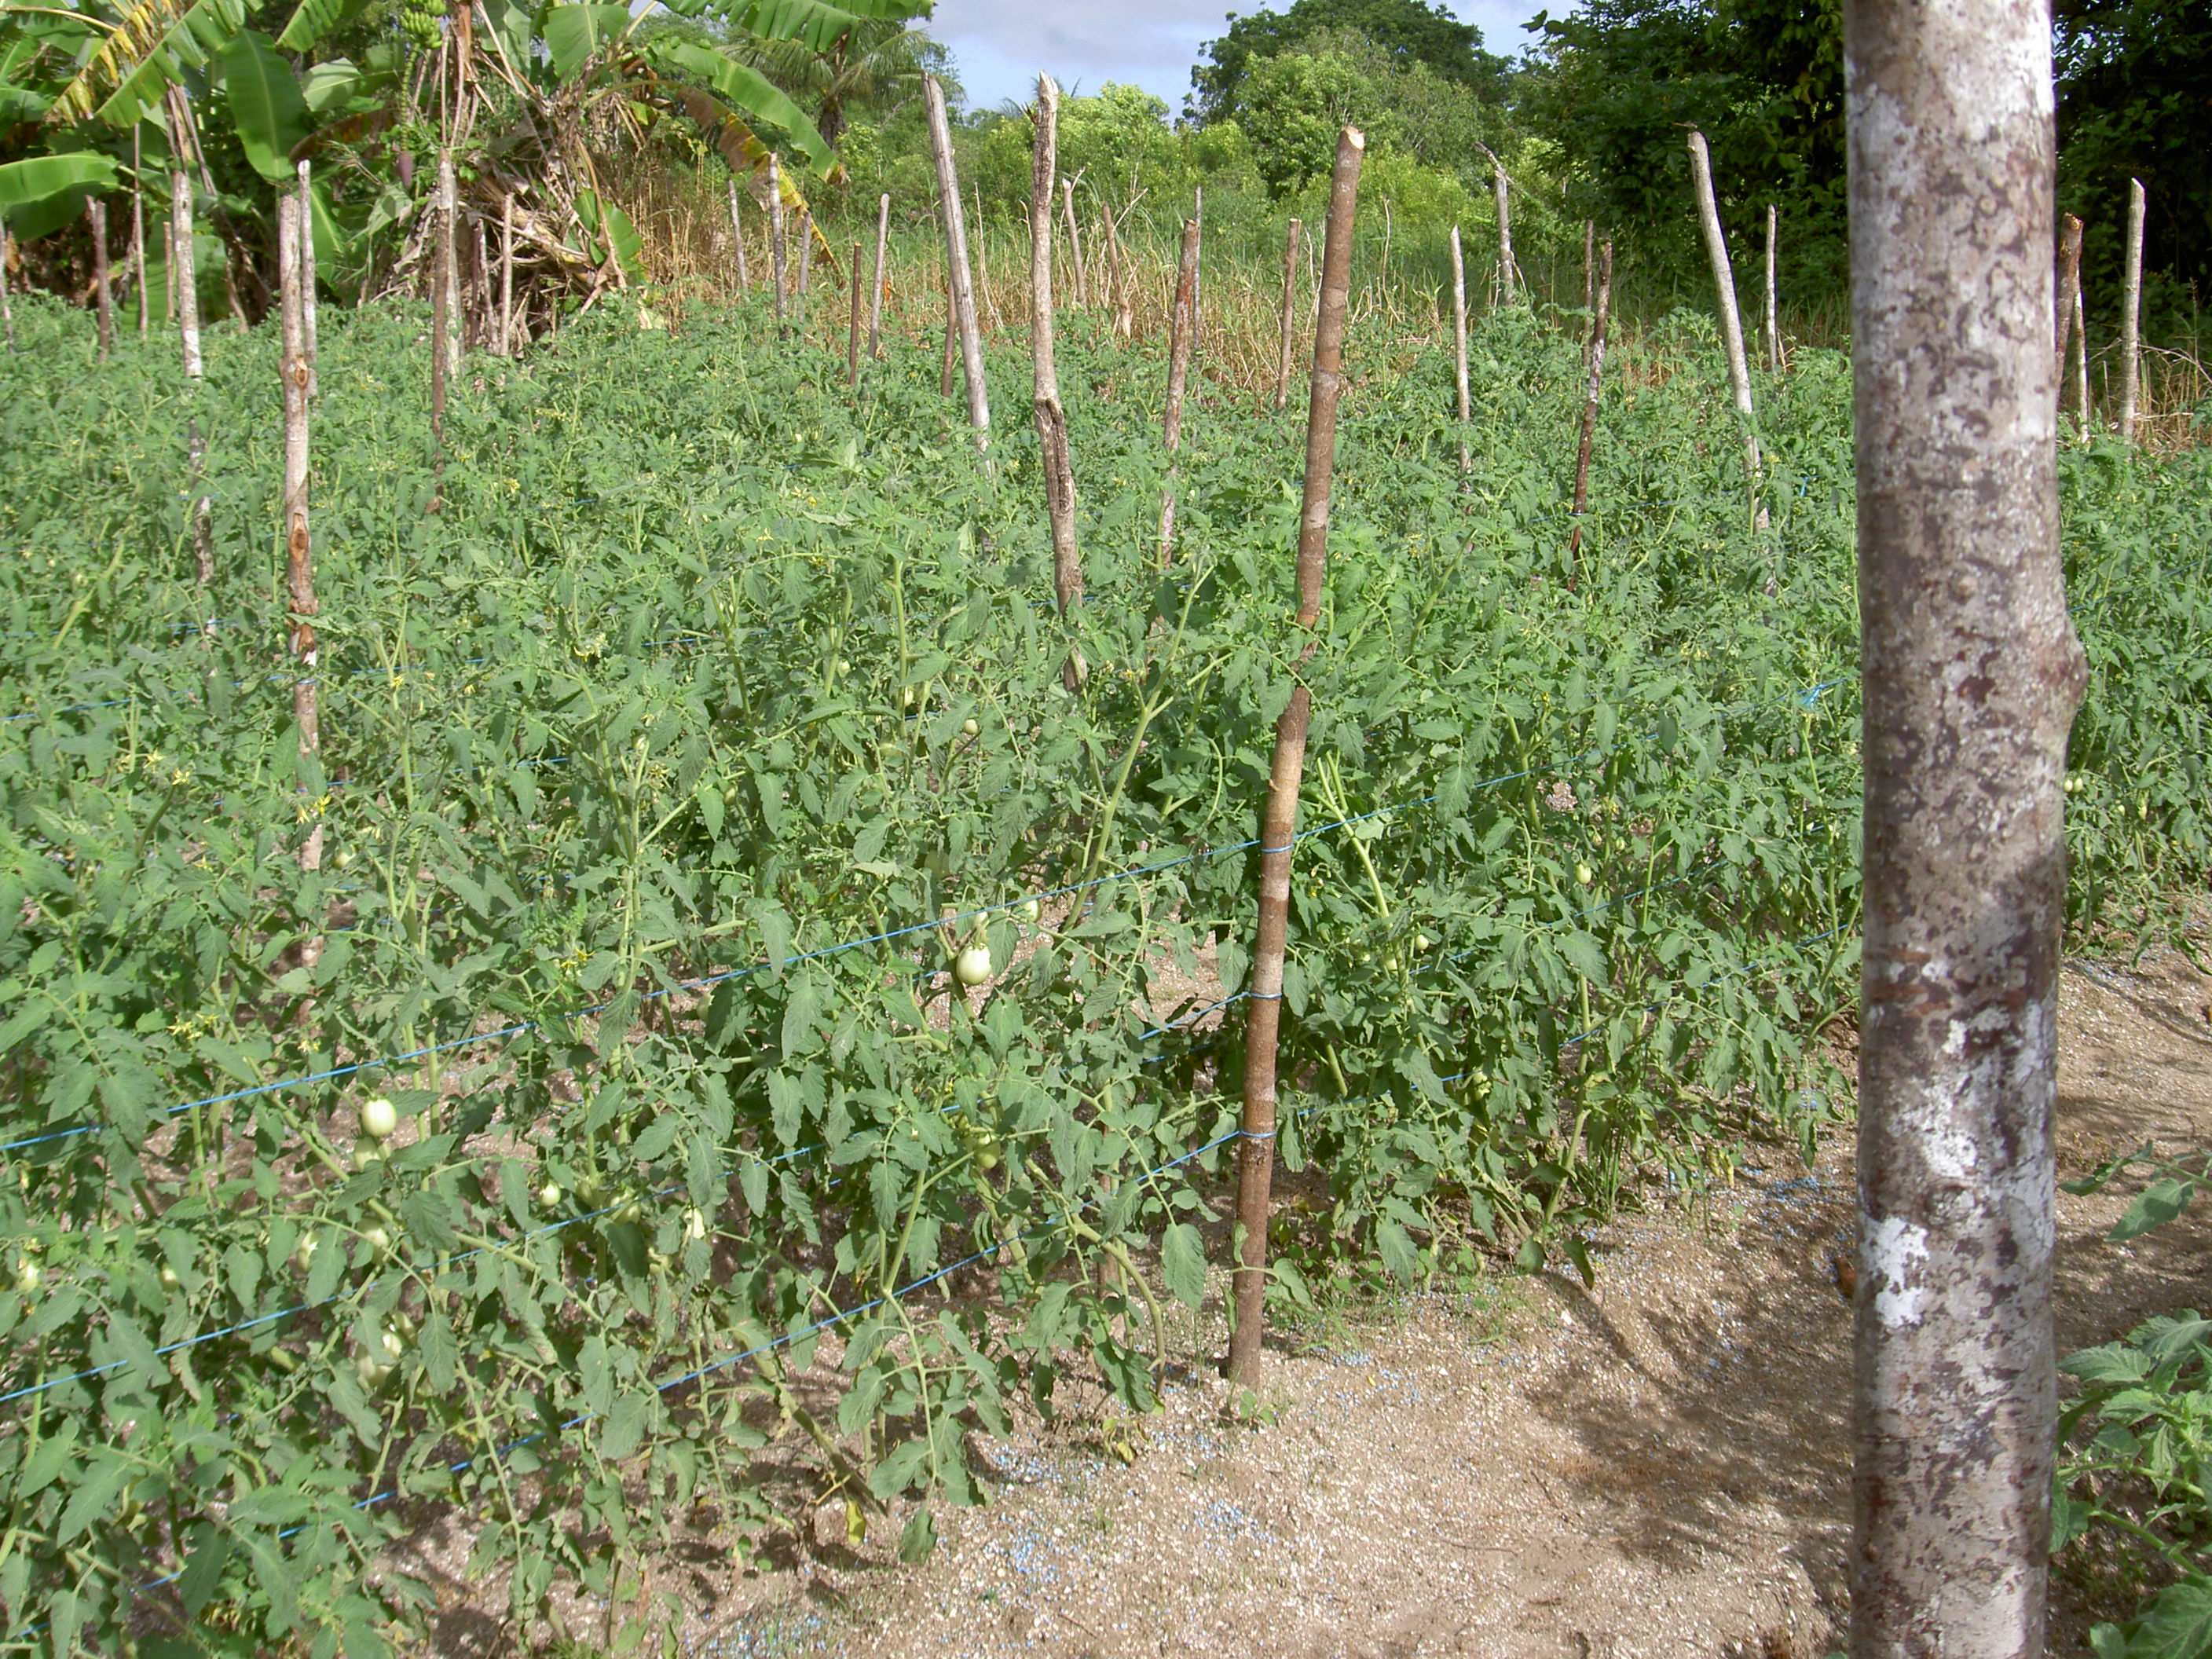 Surituin rapport: December 2006 15 4 Bezoek aan tuinders In de districten Paramaribo en Wanica (gebied westelijk van de stad Paramaribo) zijn in de omgeving van Kwatta samen met twee